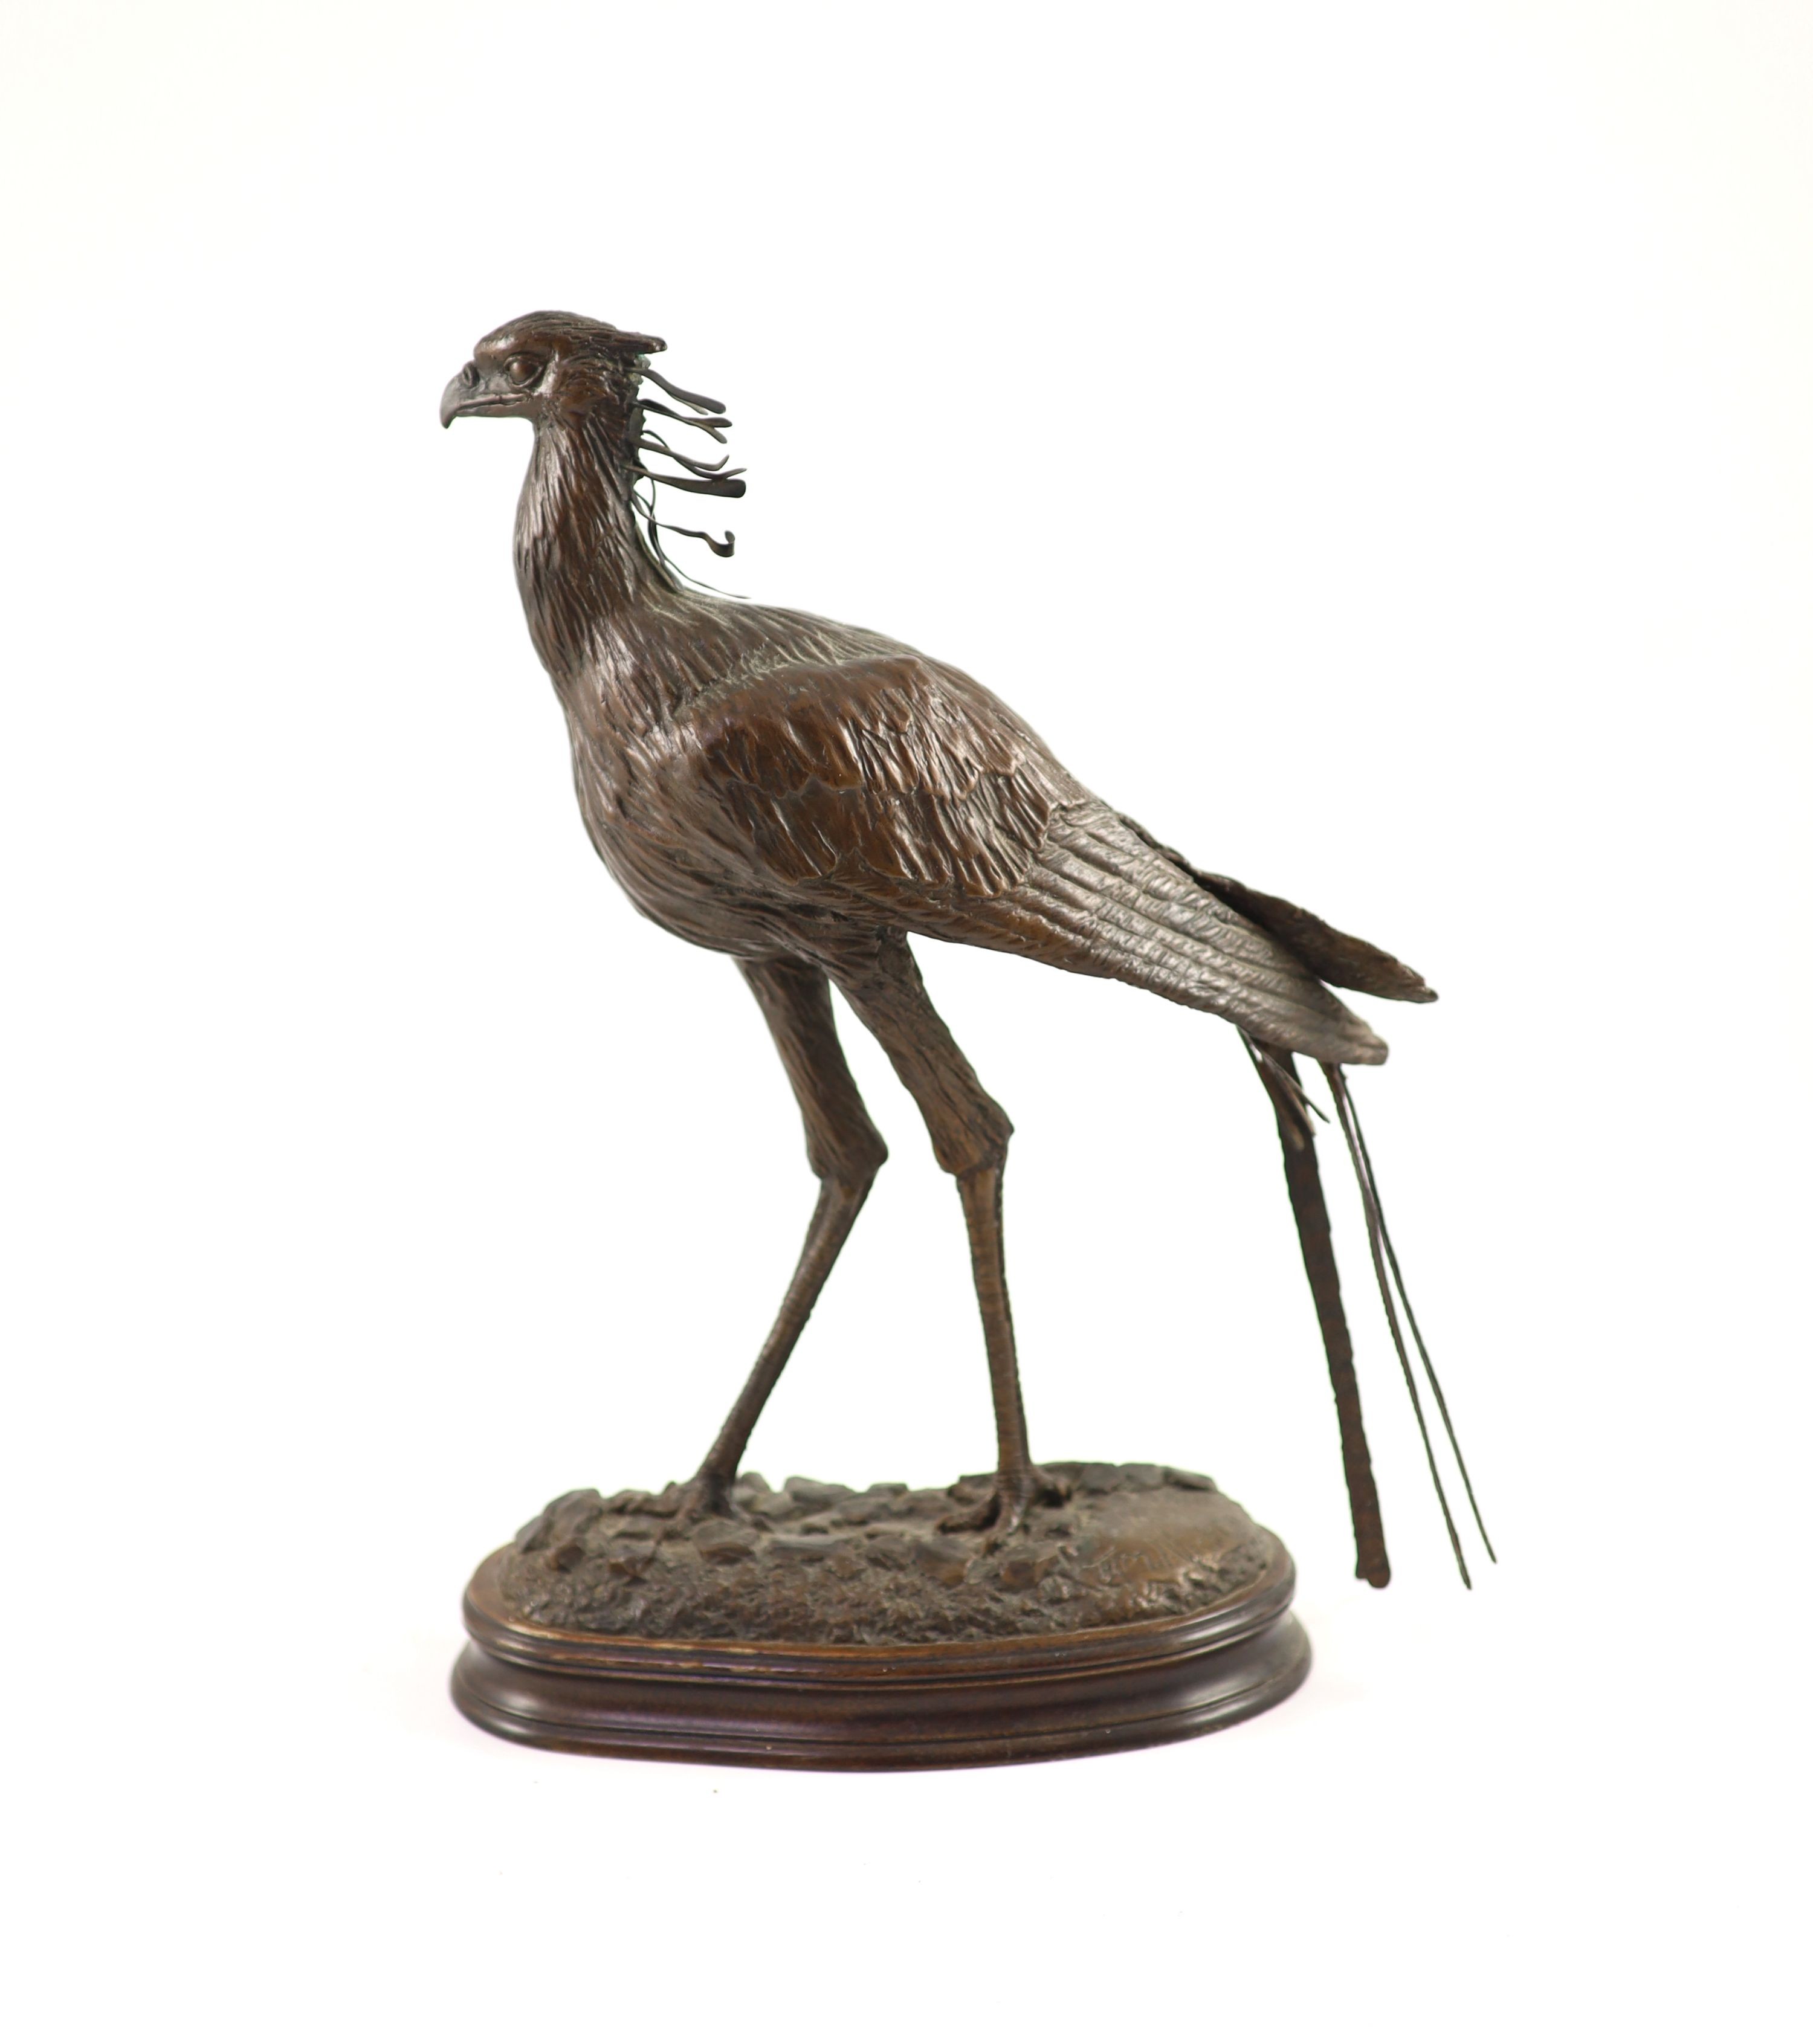 Tim Nicklin. A bronze model of a Secretary bird width 24cm height 32cm